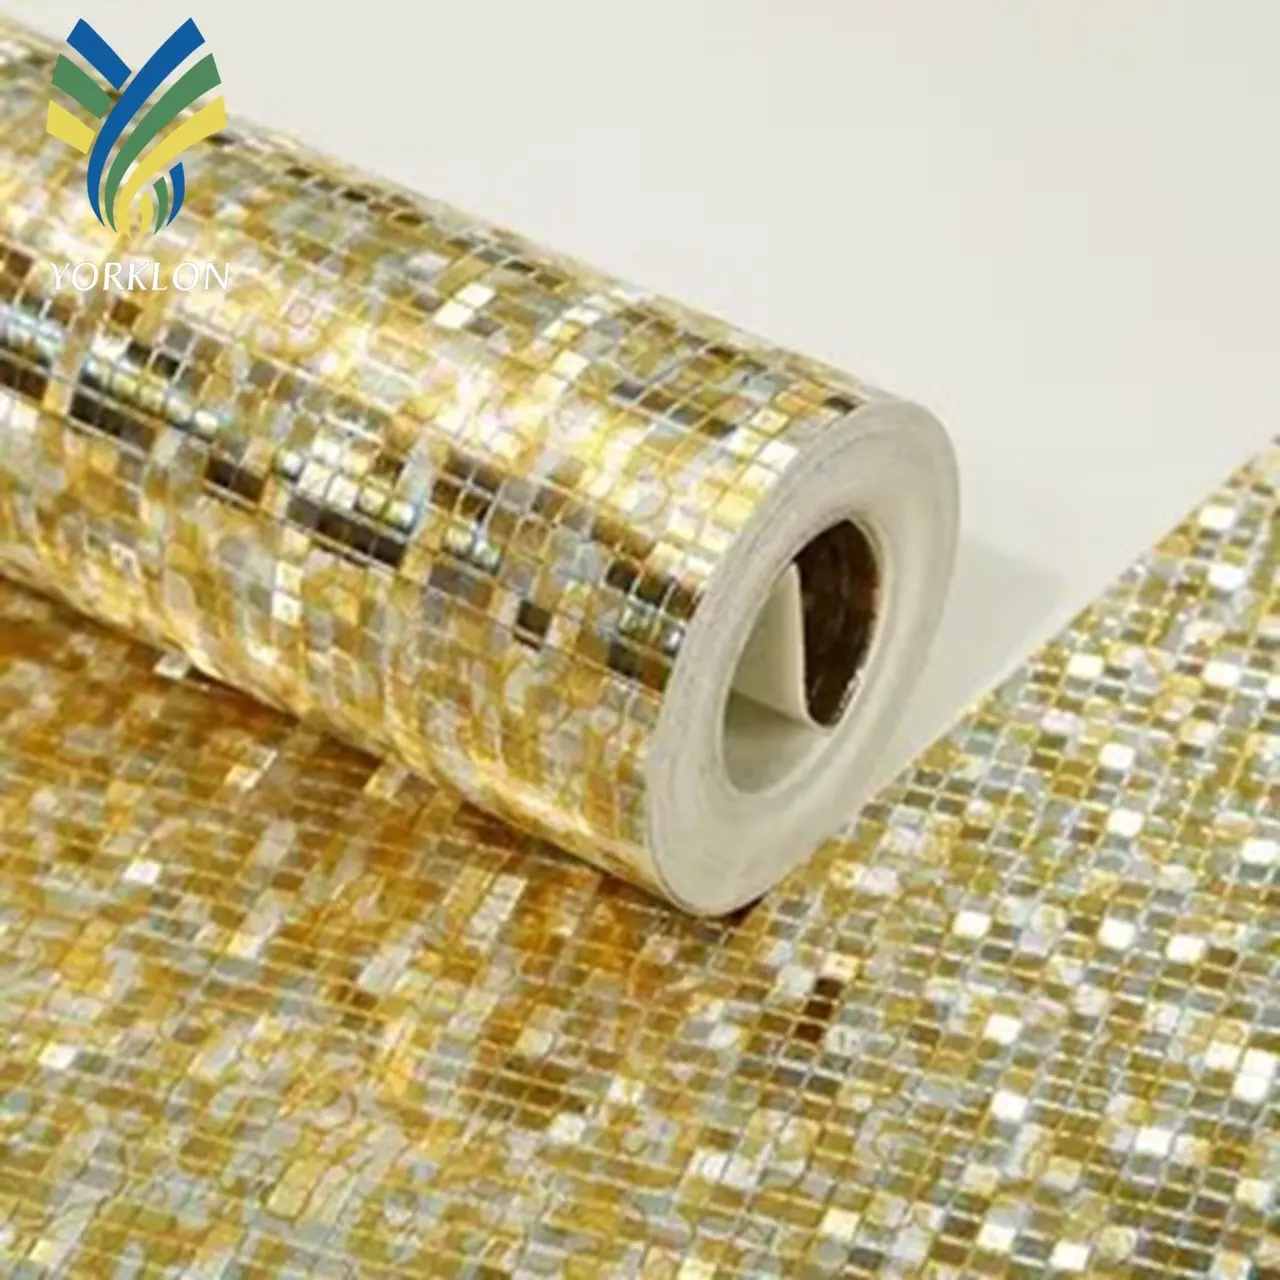 YKWP 13 Classic Home Wall paper 3D Room Decor Mosaic Wallpaper Gold Silver Glitter Wallpaper Rolls Metallic Wallpapers